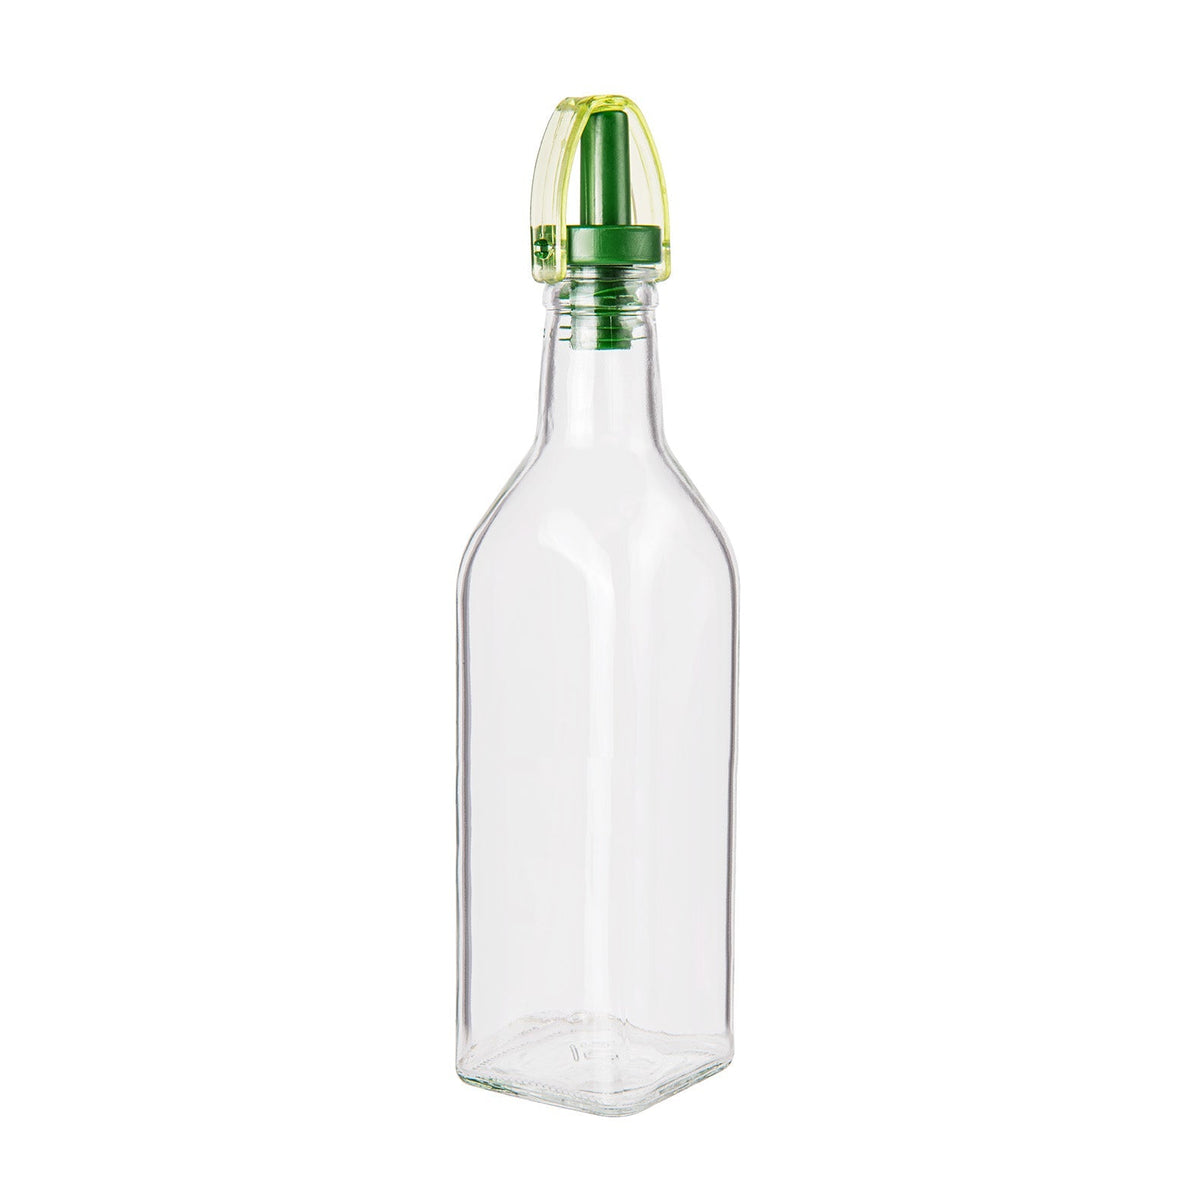 Glasflaske med olie eller eddike dispenser - 250 ml